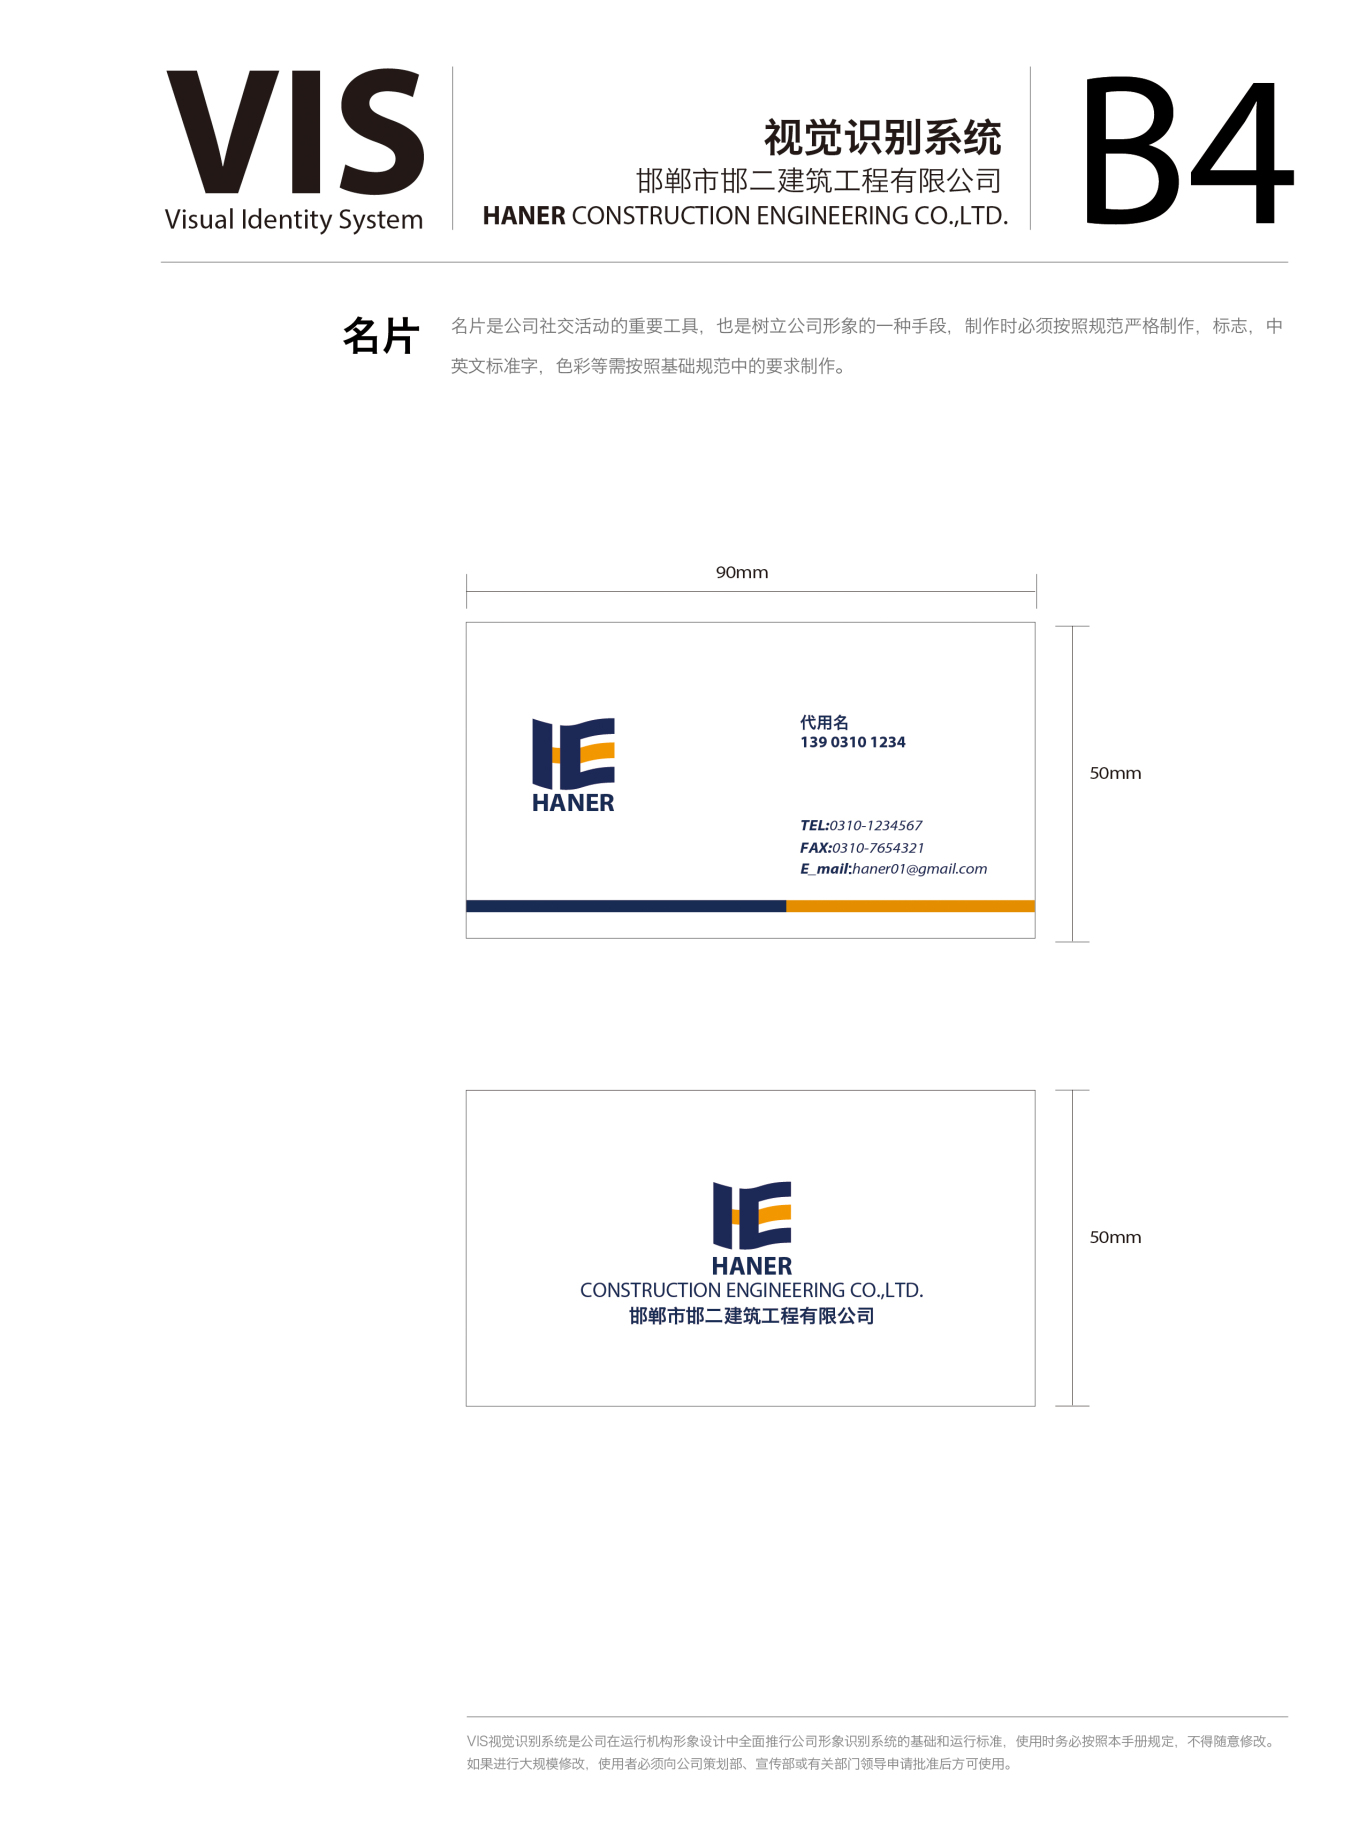 邯郸第二建筑有限公司logo 及 VIS图11